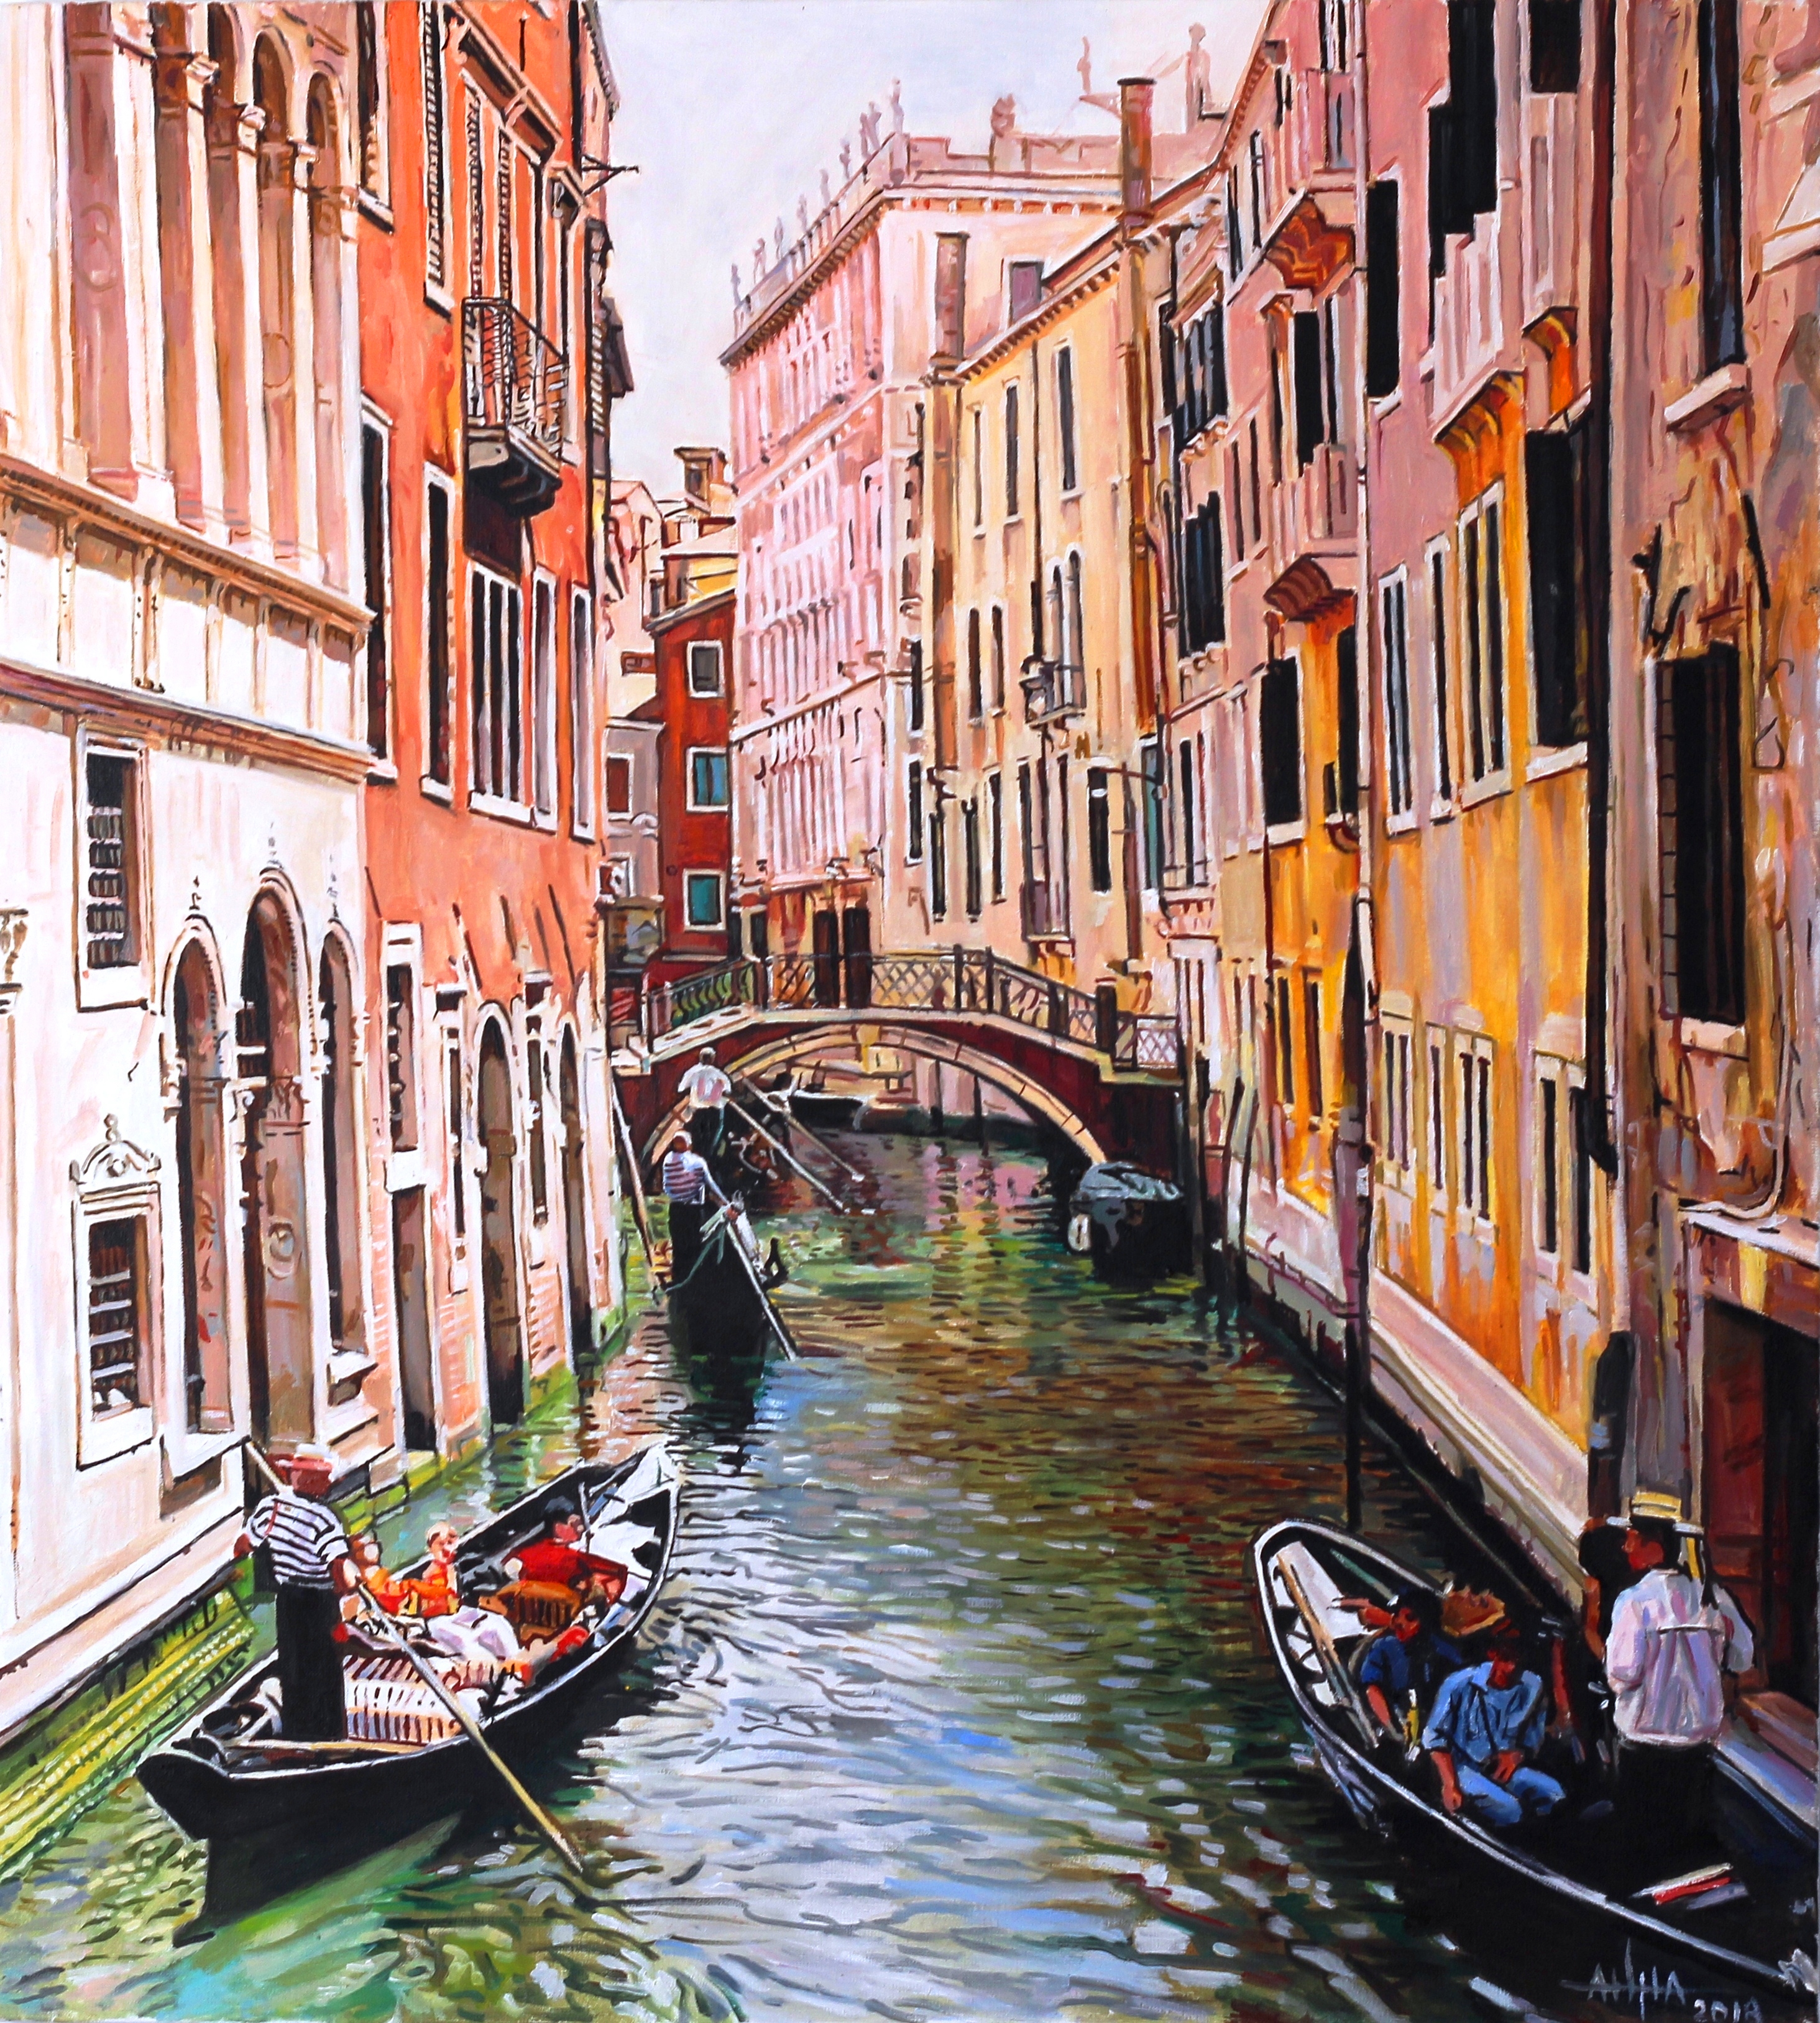 Удивительный город венеция. Венеция Италия. Grand canal Венеция. Венеция столица Италии. Венеция (коммуна) архитектура Венеции.